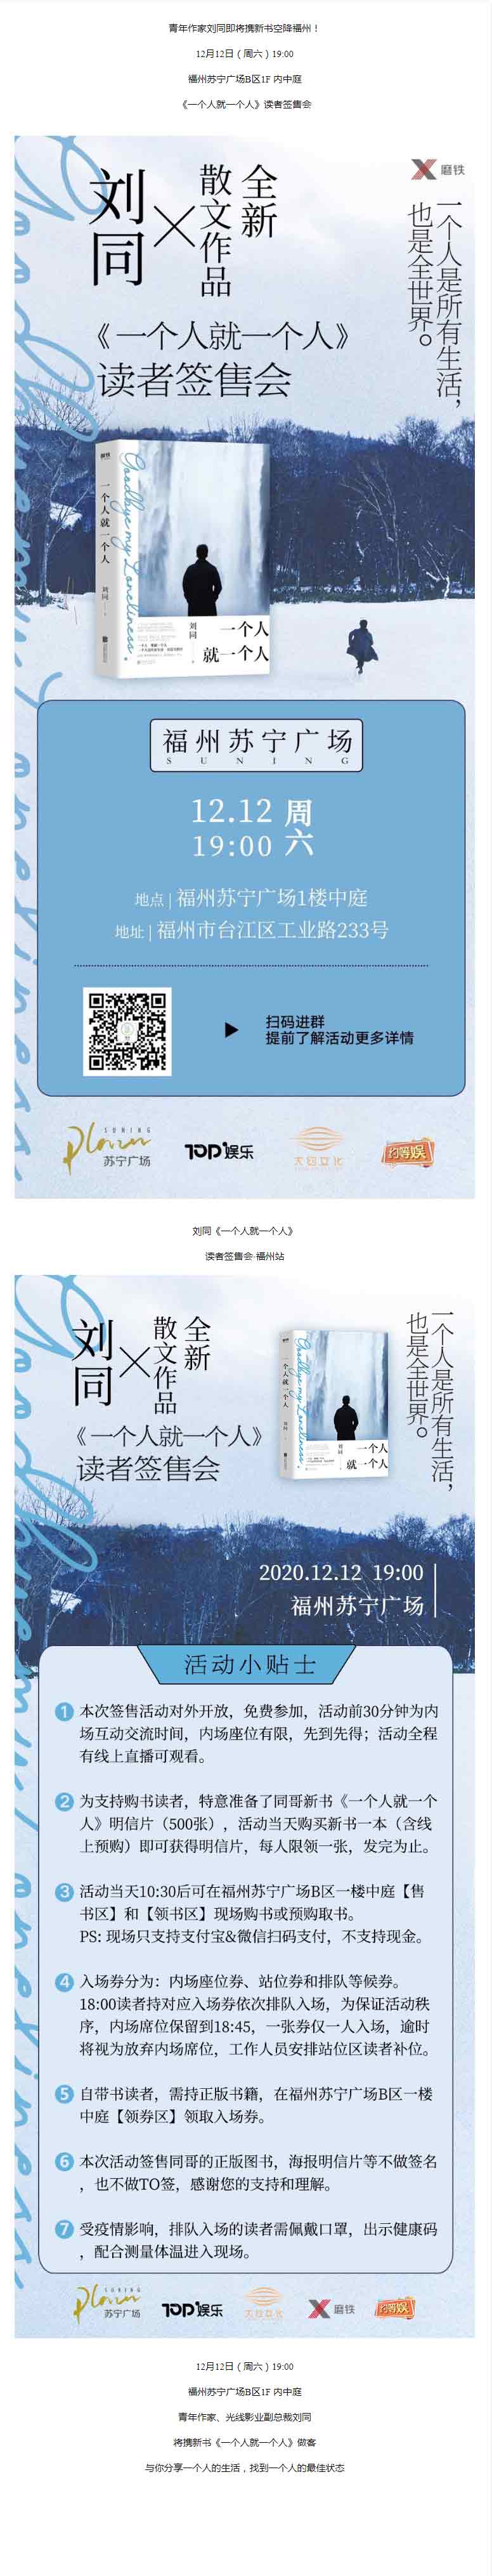 2020年12月12日刘同读者签售会福州站-预约报名-活动-活动行.jpg